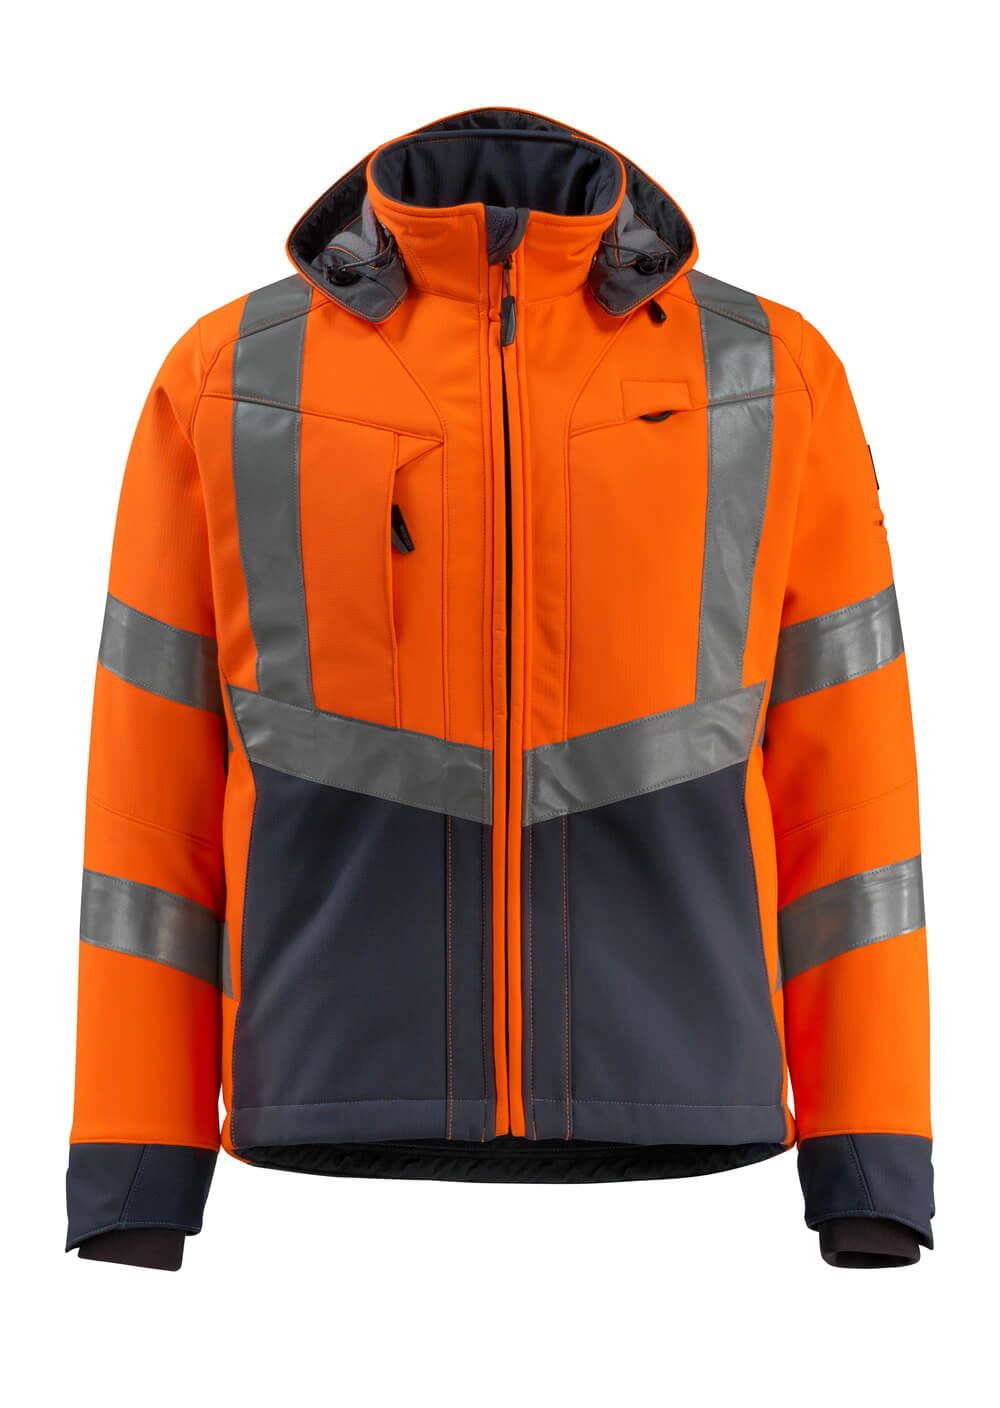 Mascot Workwear BLACKPOOL Orange/Navy Unisex Hi Vis Softshell Jacket, S